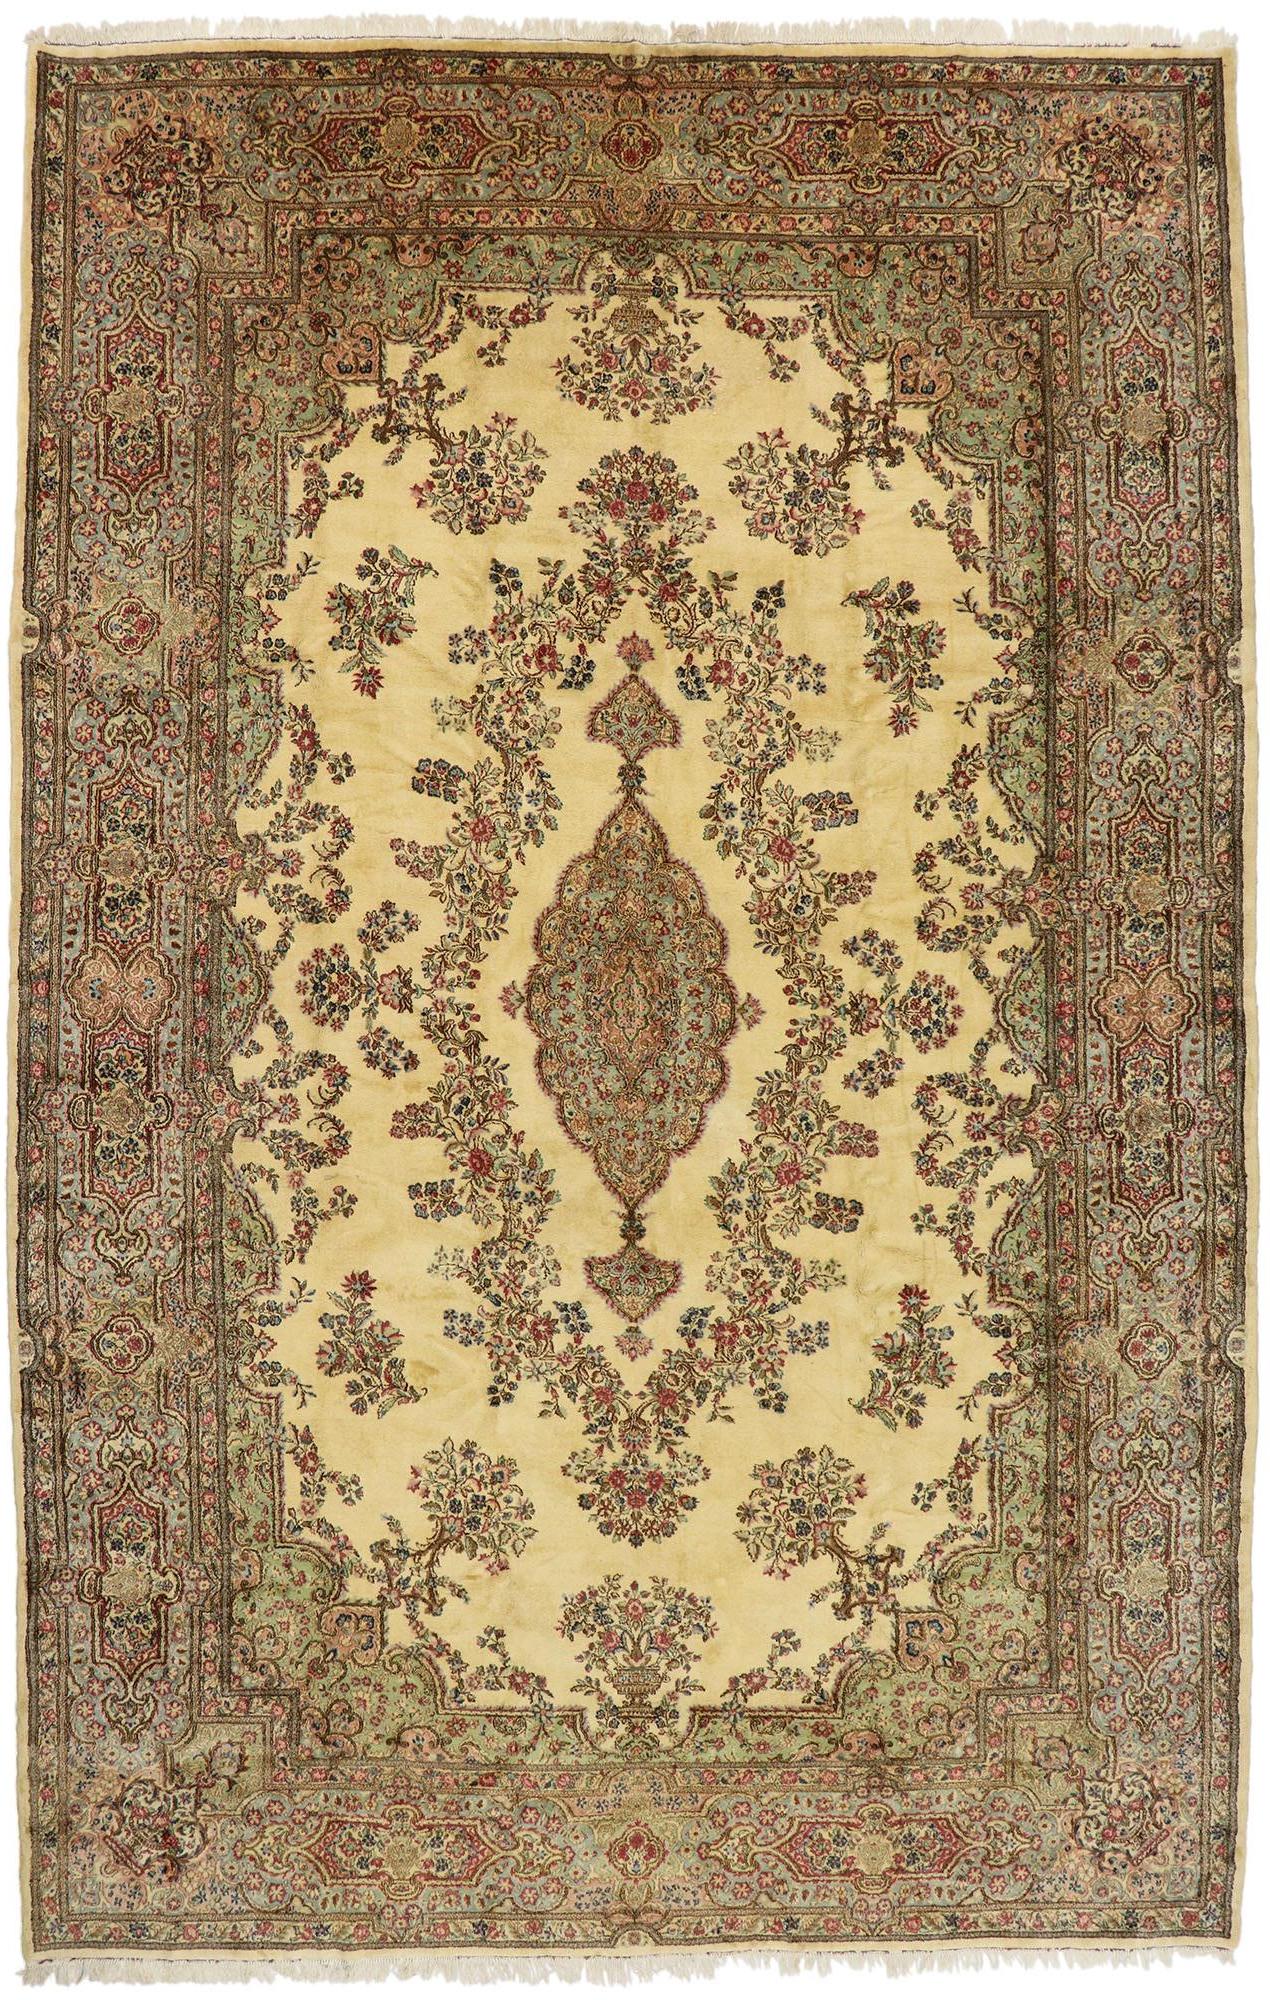 77168 Übergroßer antiker persischer Kerman-Teppich, 11'06 x 17'10. 
Bereiten Sie sich darauf vor, von der schillernden Anziehungskraft dieses übergroßen, antiken Kerman-Teppichs überwältigt zu werden - ein Meisterwerk, das praktisch schreit: